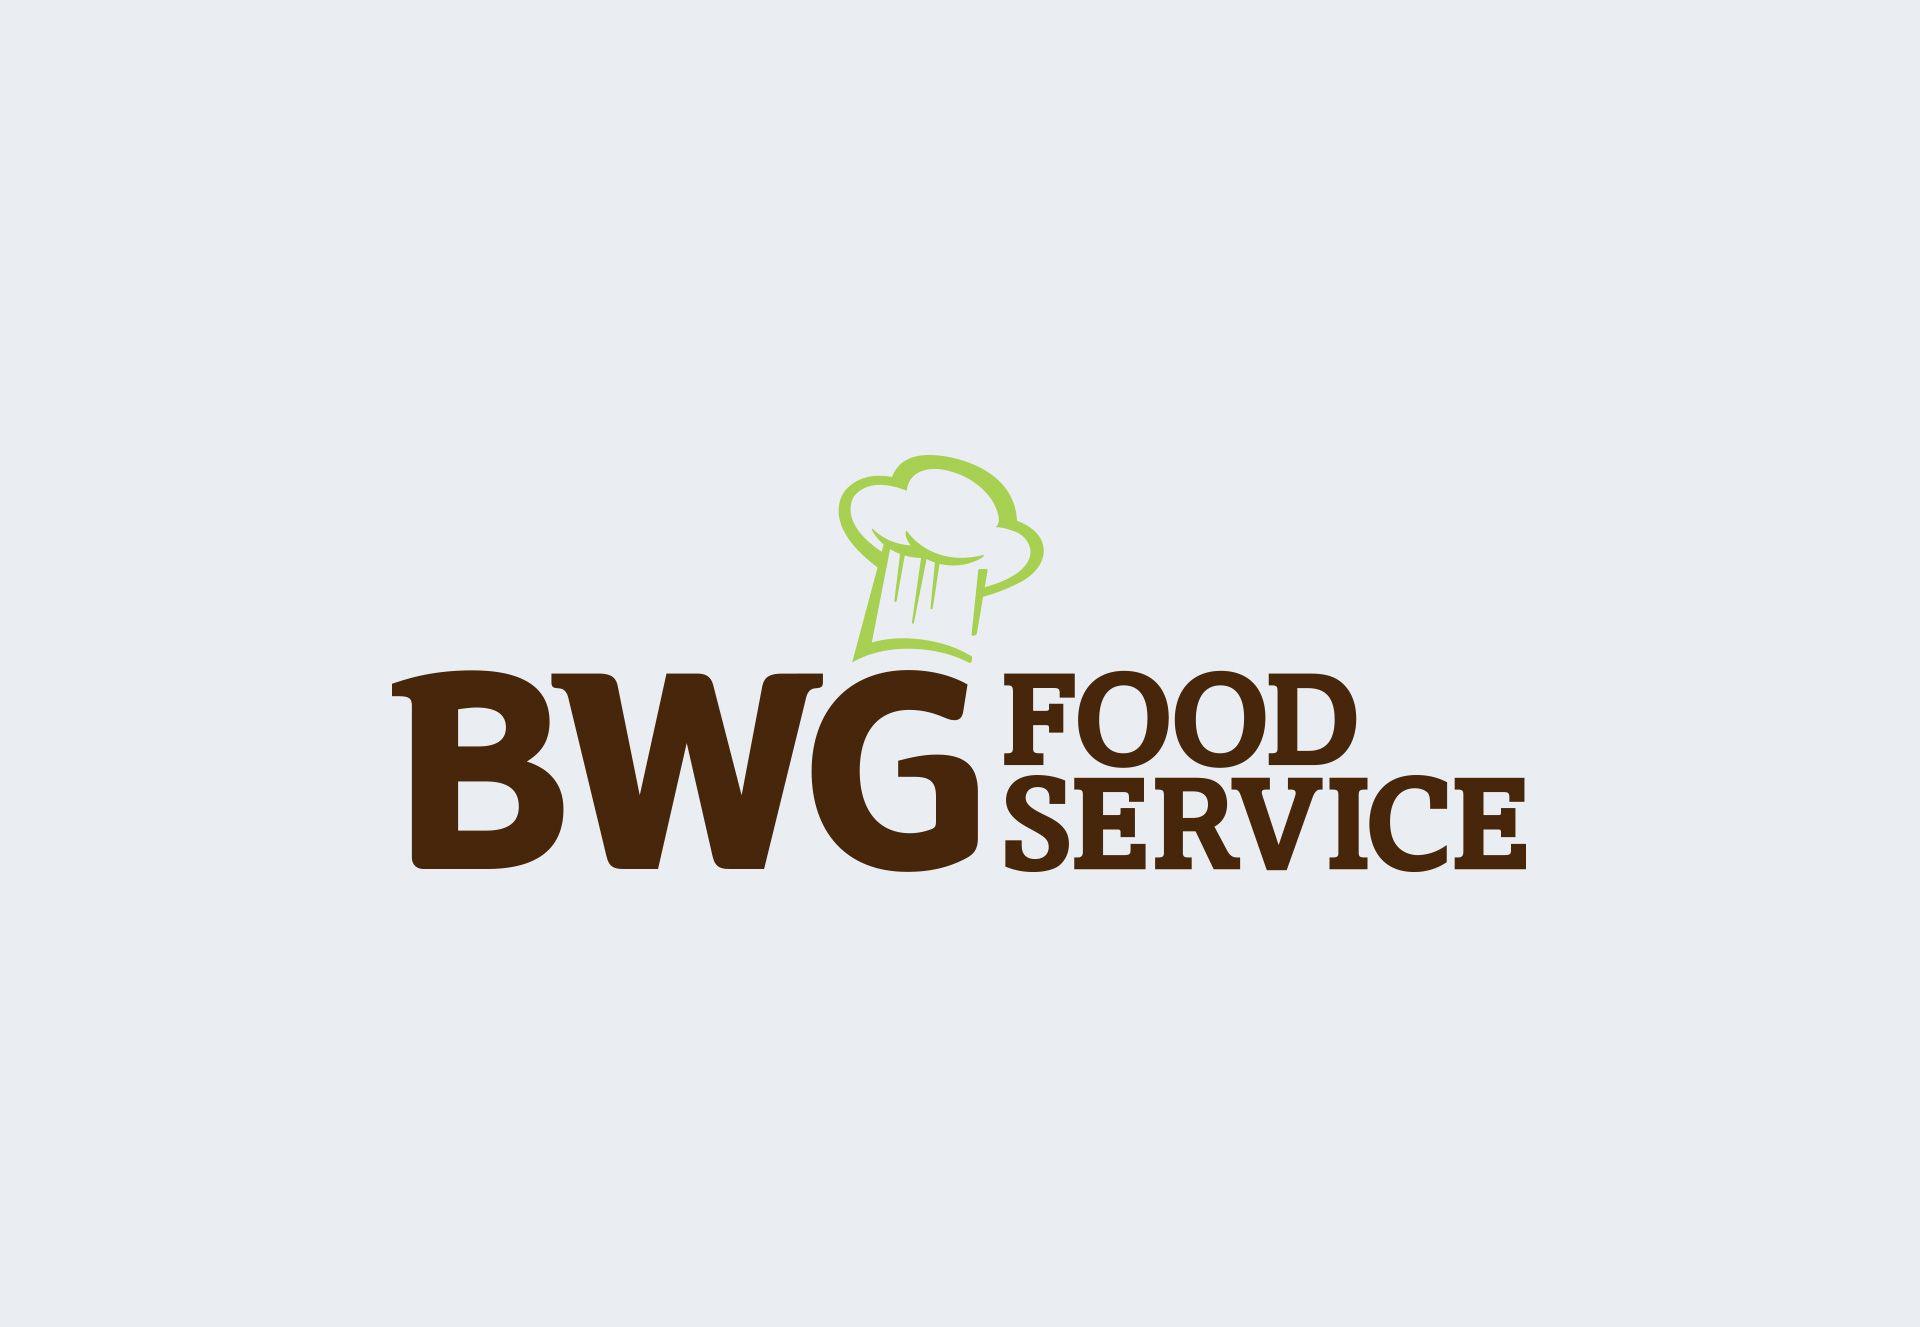 BWG Logo - BWG Foodservice is established – www.bwg.ie